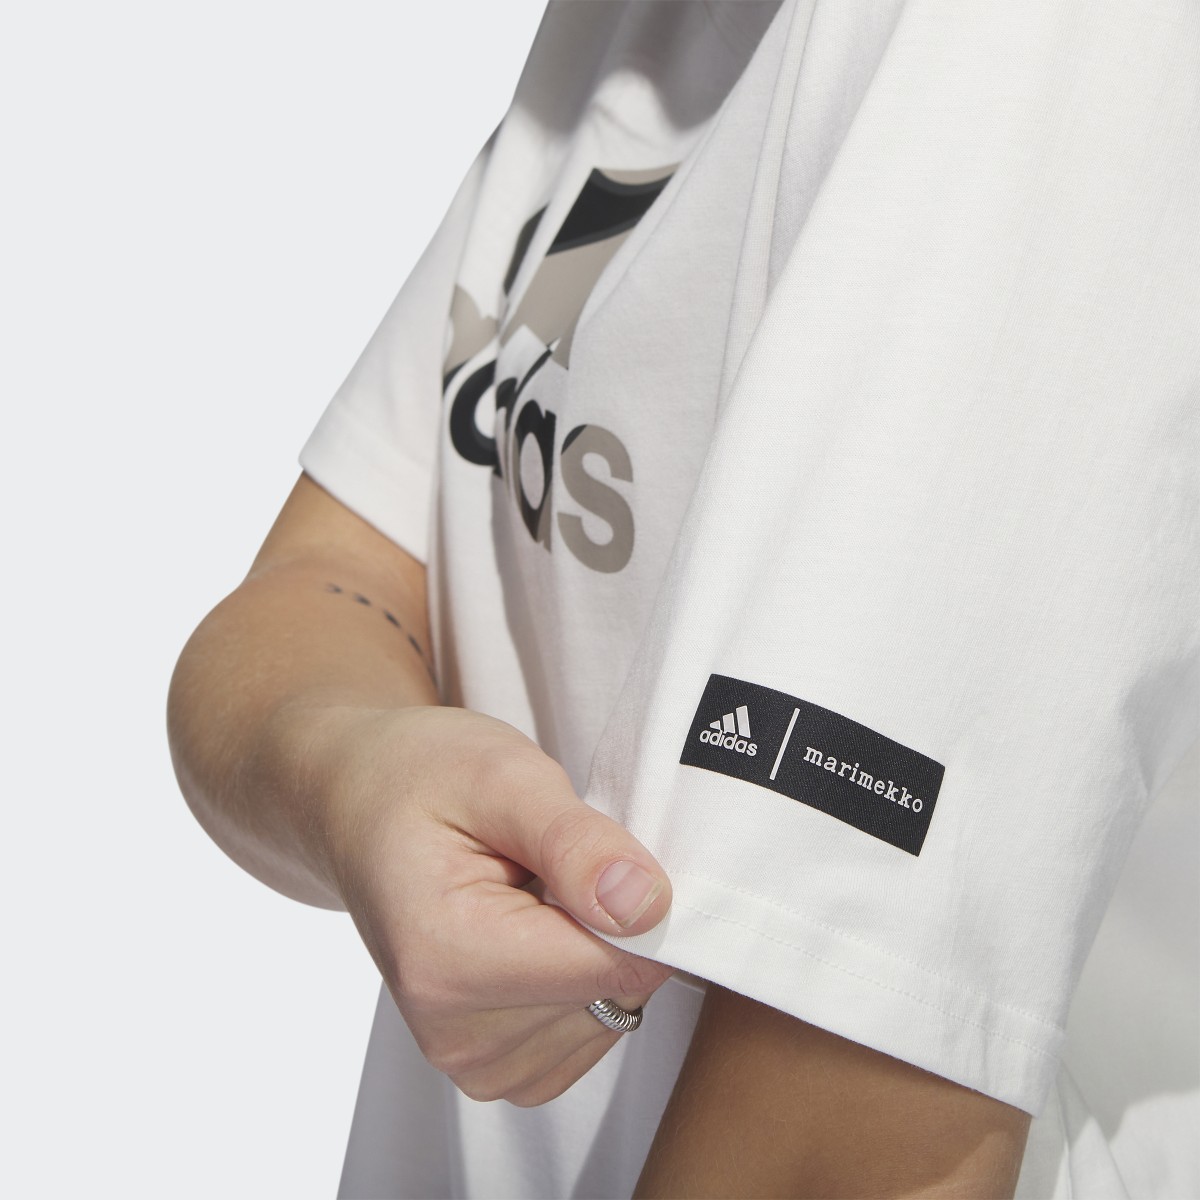 Adidas Marimekko Crop T-Shirt. 7